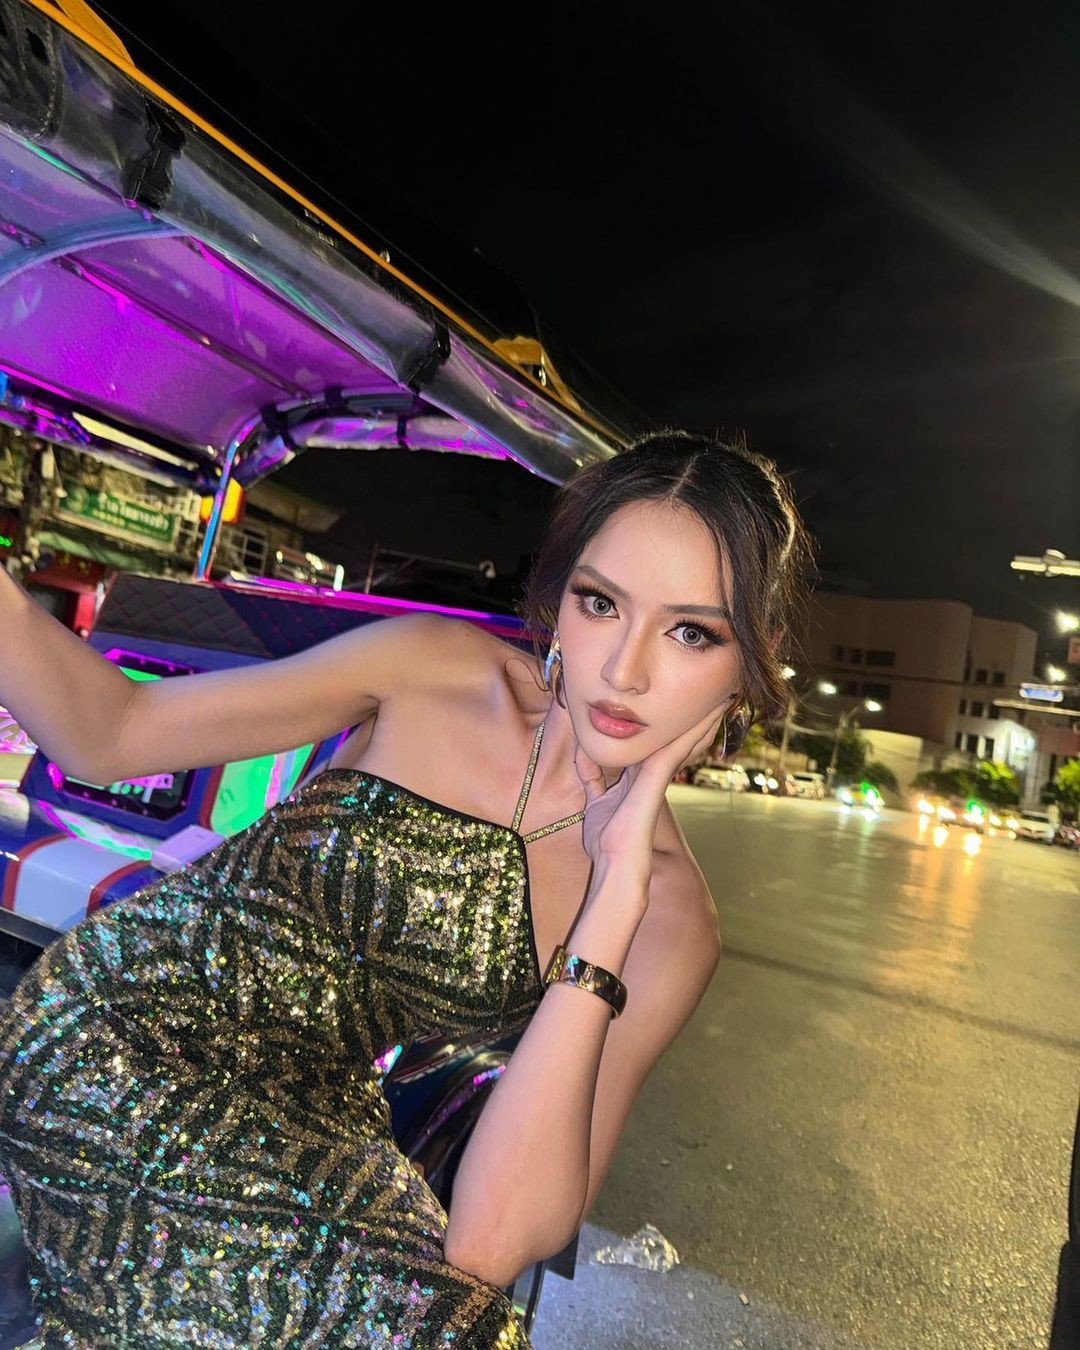 3 mỹ nhân chuyển giới trong MV ROCKSTAR - Lisa: Có Á hậu 1 Miss Tiffany’s Universe - 3